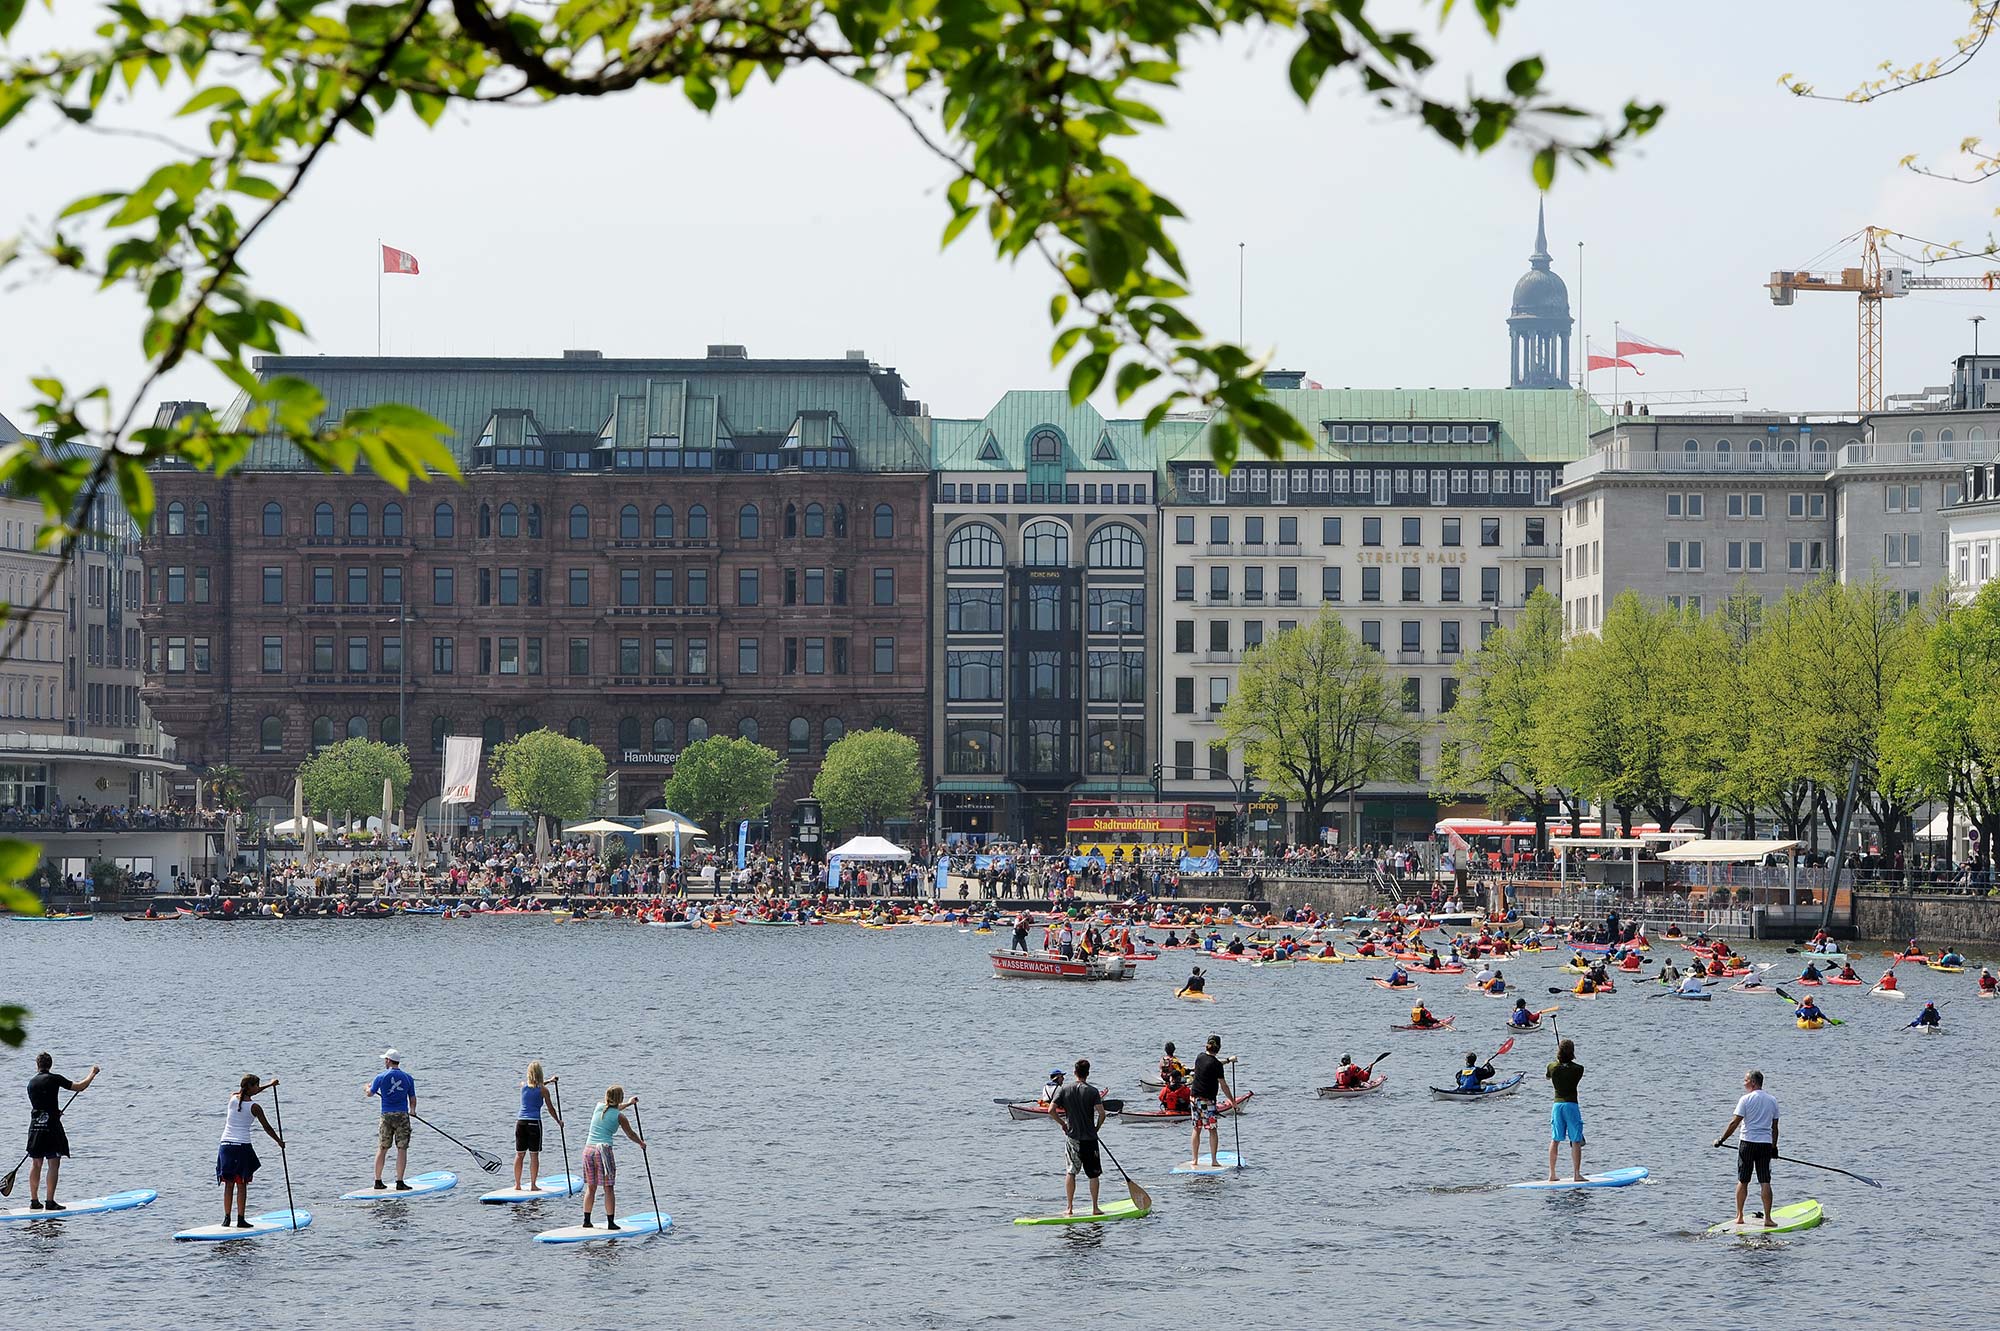 Hamburg beim Event "Hamburg zu Wasser" mit zahlreichen Wassersportbegeisterten in Kanus und Subs